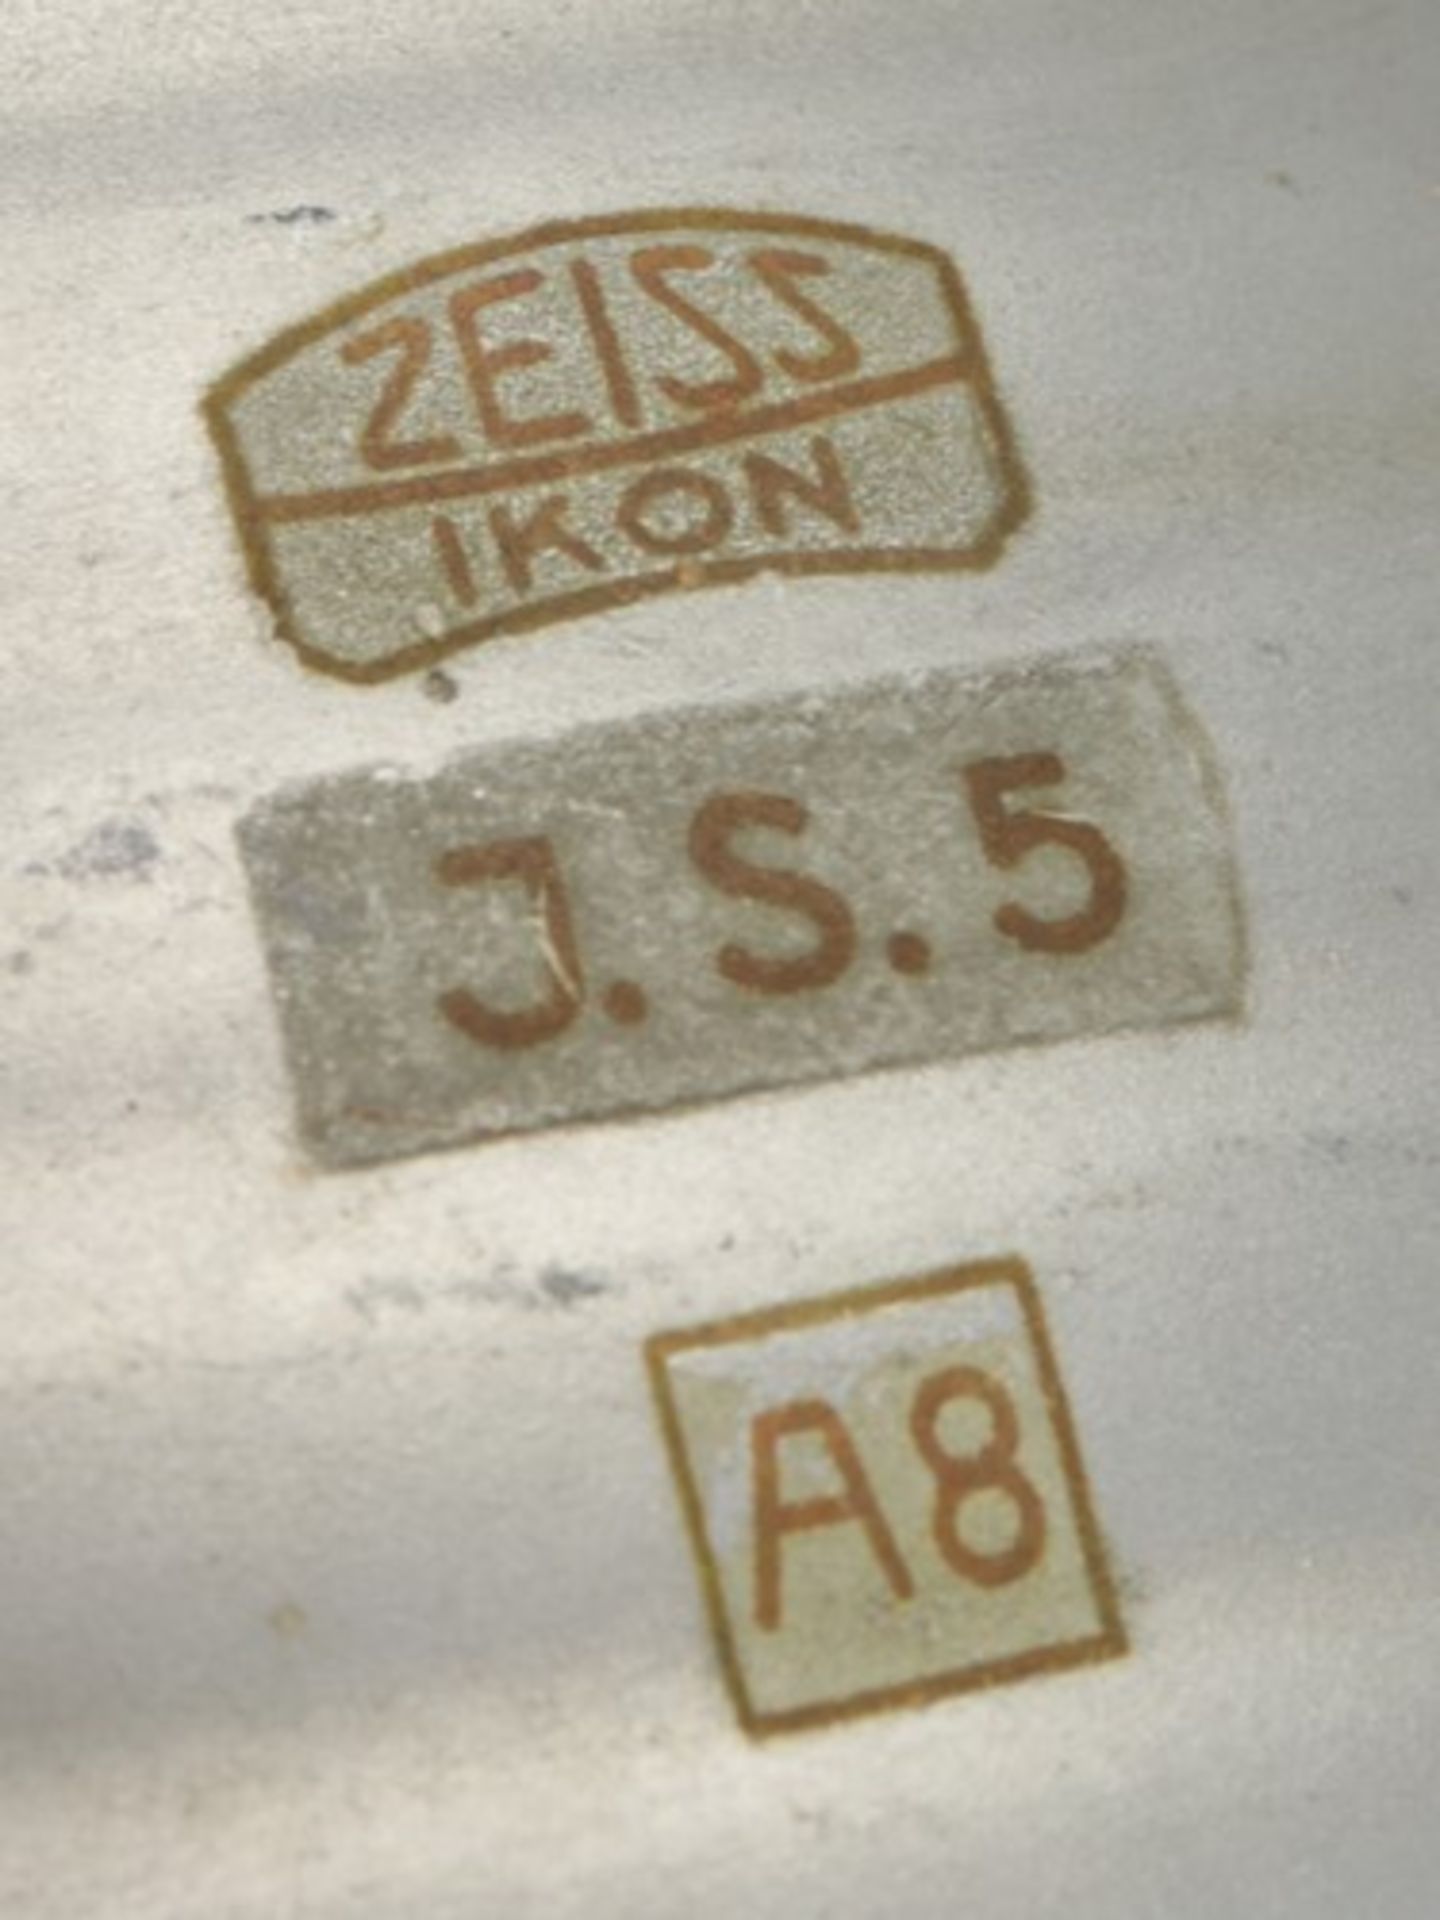 Industrielampe - Zeissum 1930 Berlin, Deckenlampe gem. Zeiss Ikon J.S.5 A8, Metall/Glas, einflammig, - Bild 4 aus 4